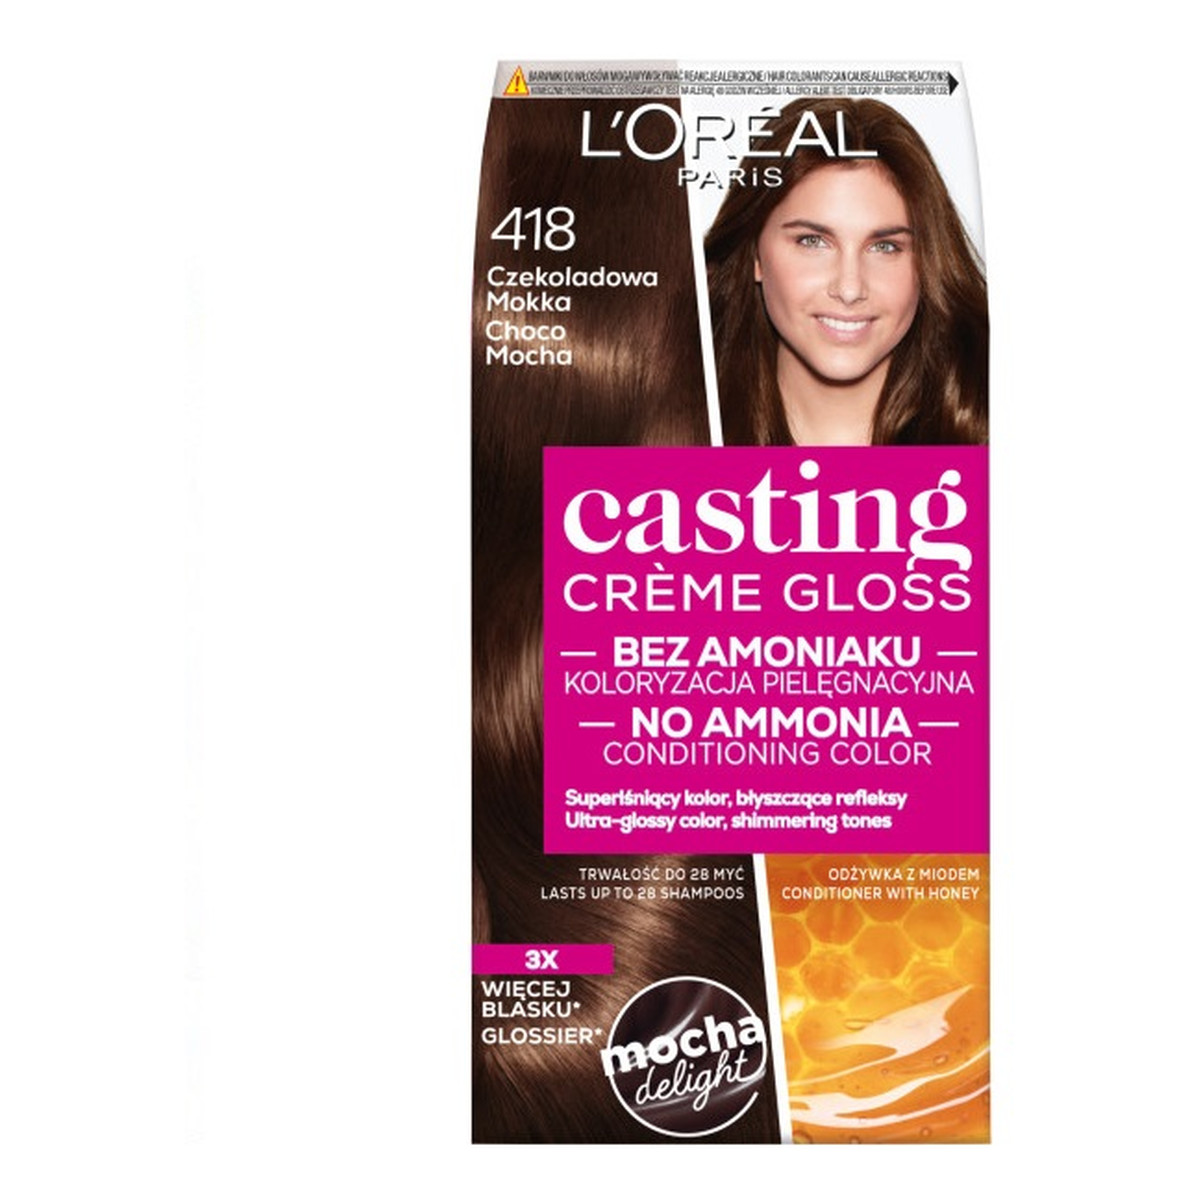 L'Oreal Paris Casting creme gloss farba do włosów 418 czekoladowa mokka